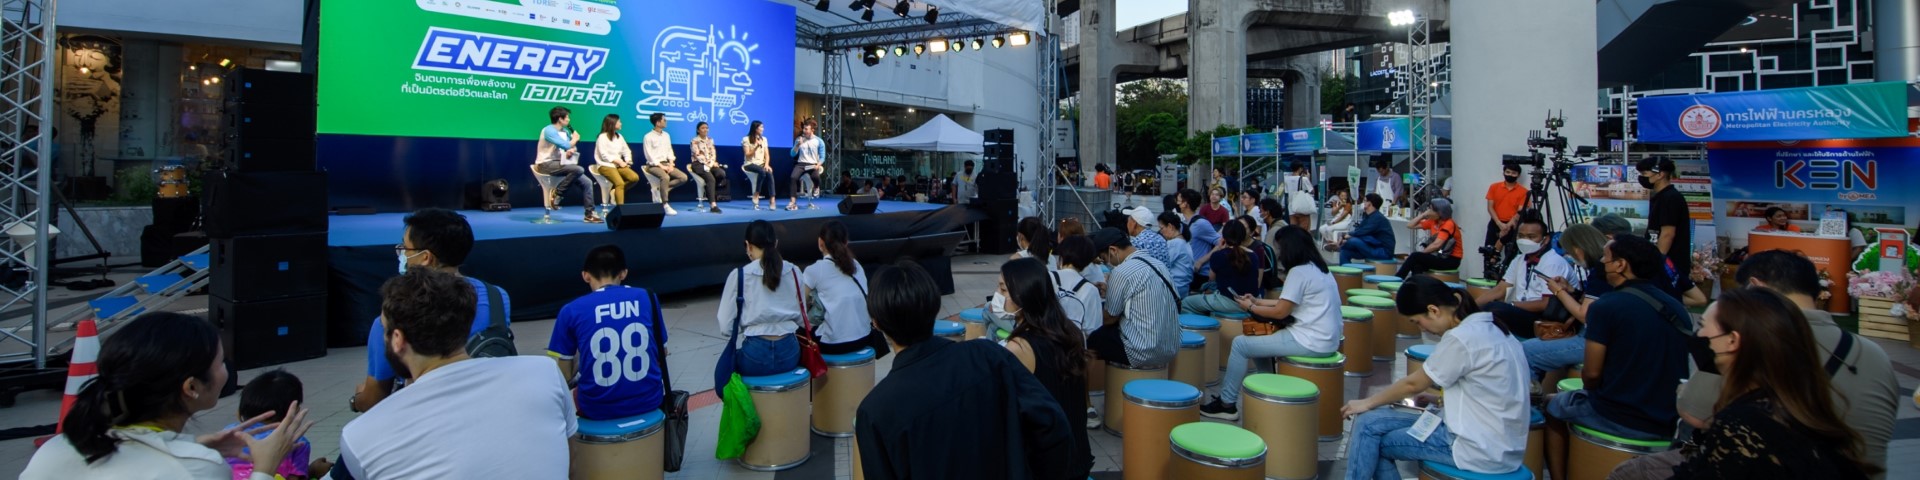 Sechs Personen sitzen bei einer Veranstaltung auf einer Bühne vor einem Publikum.